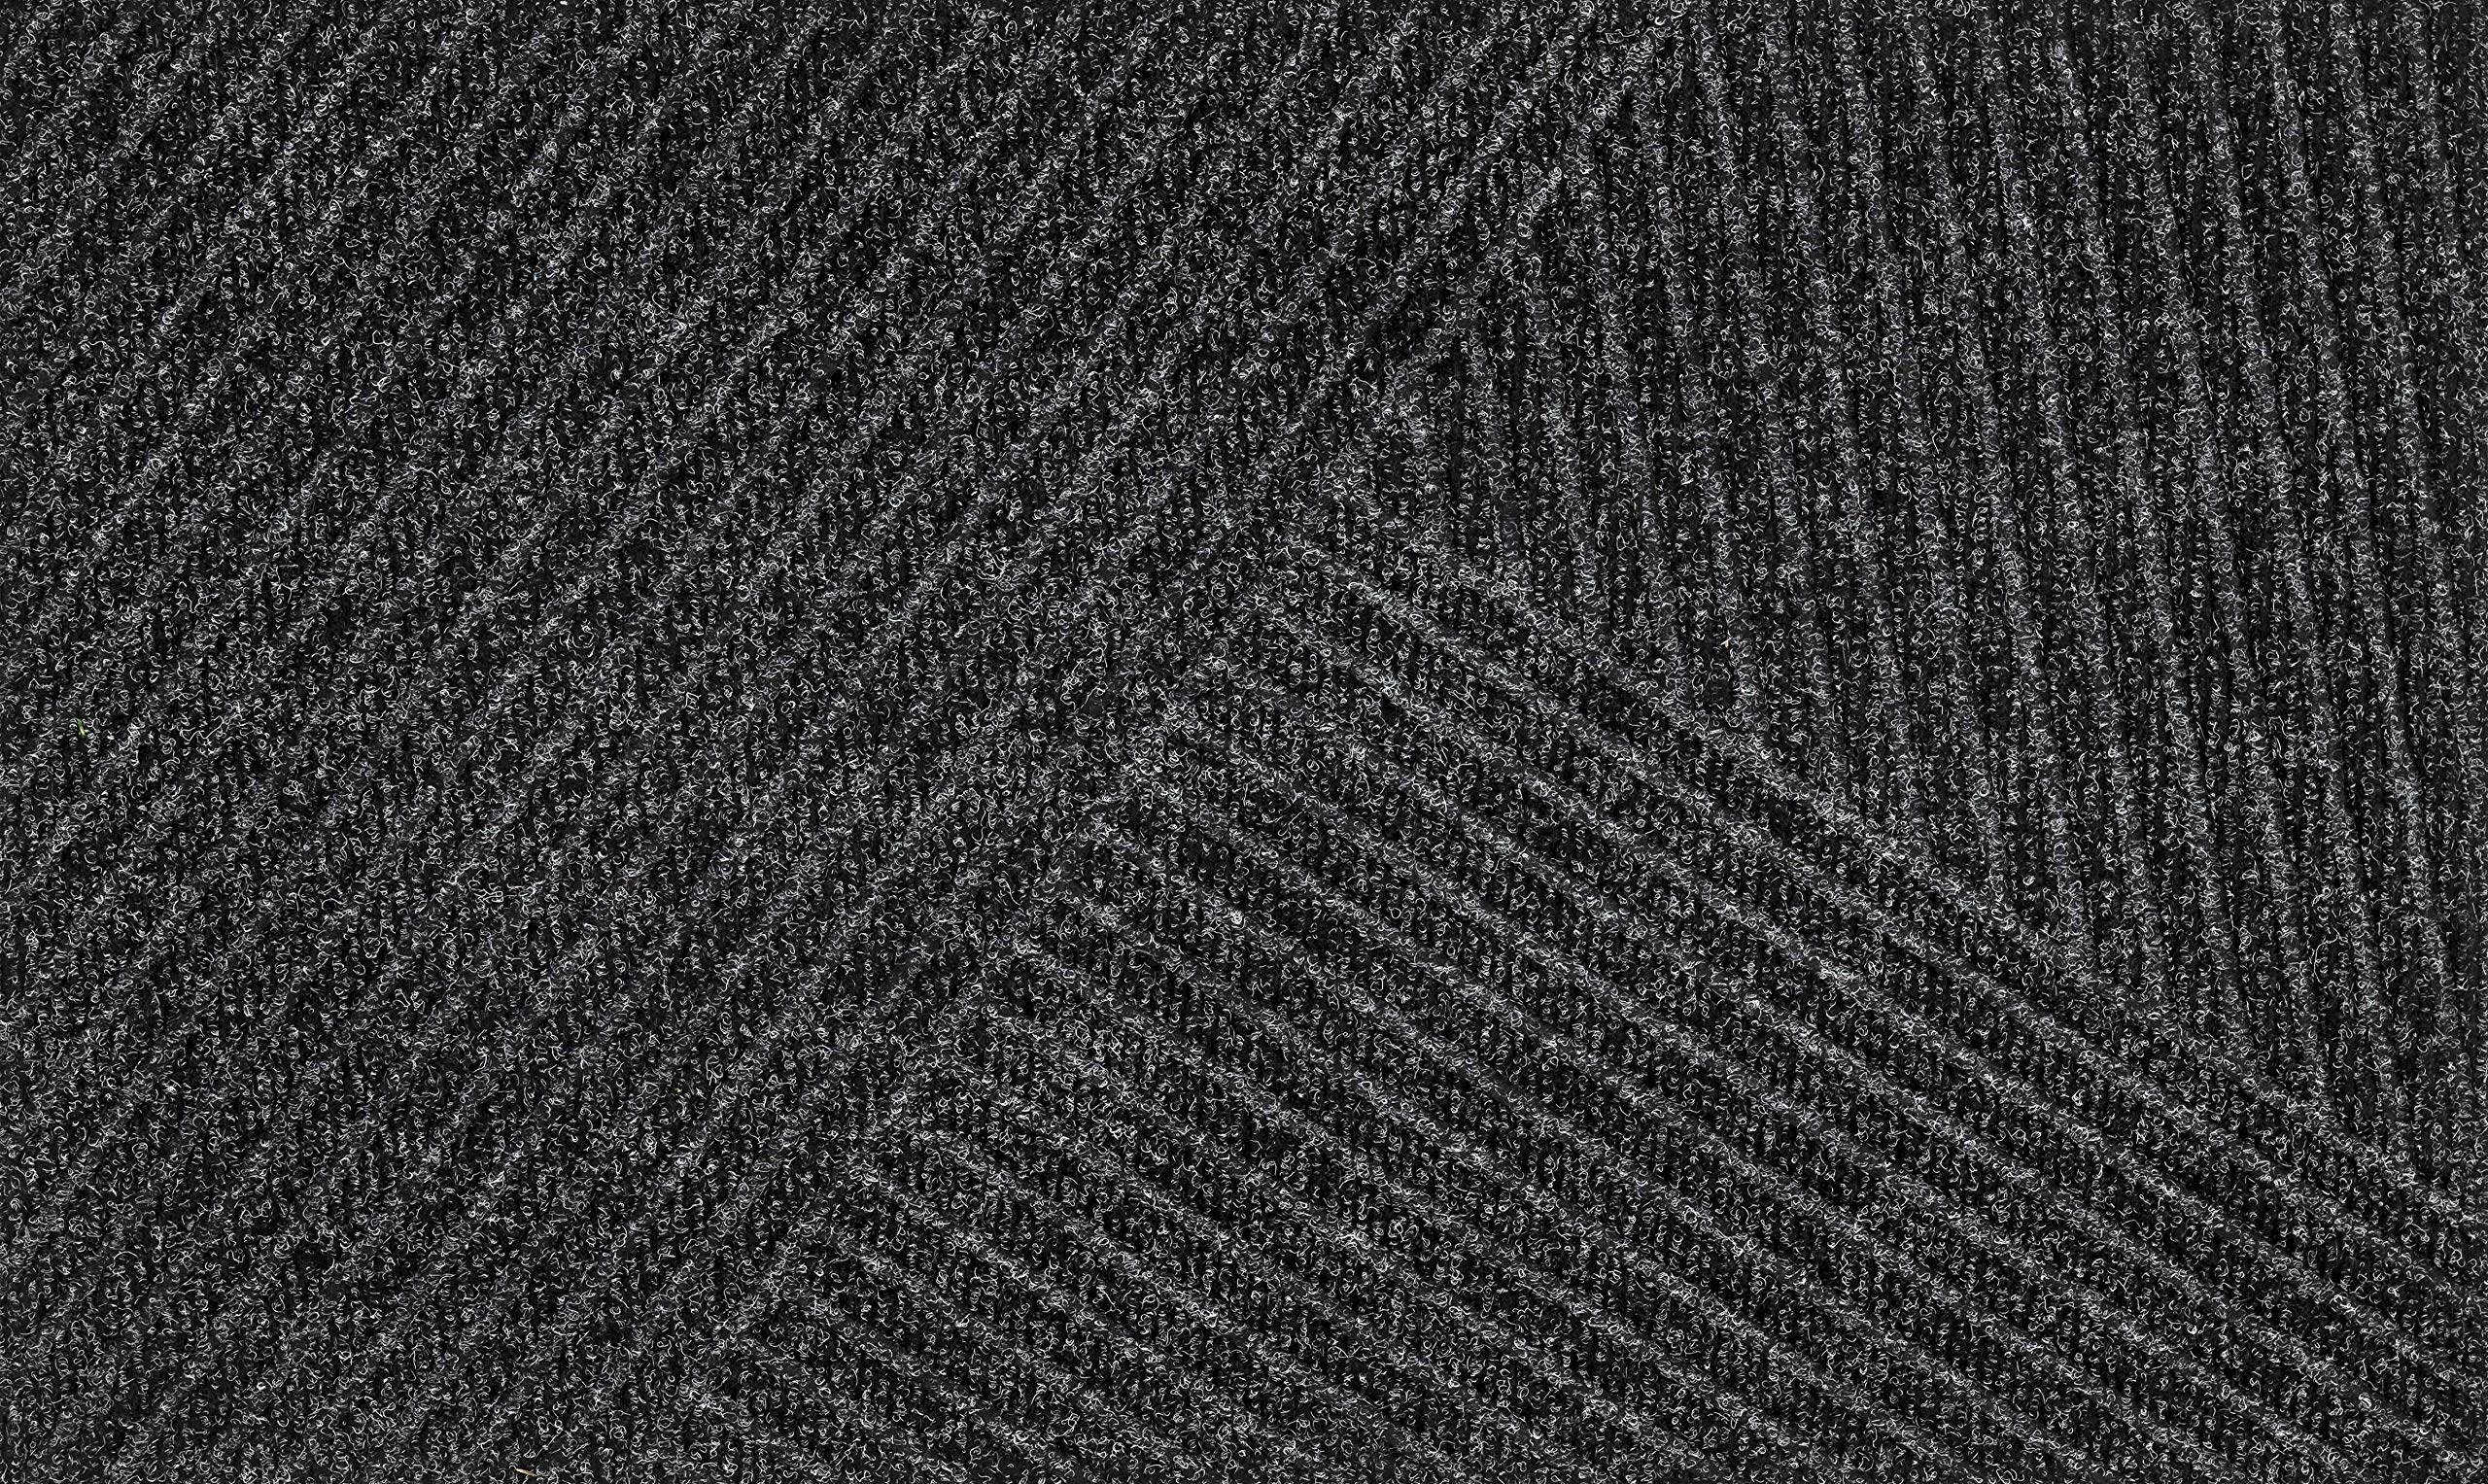 DUNE Stripes dark grey 45x75 cm, innen und außen, waschbar